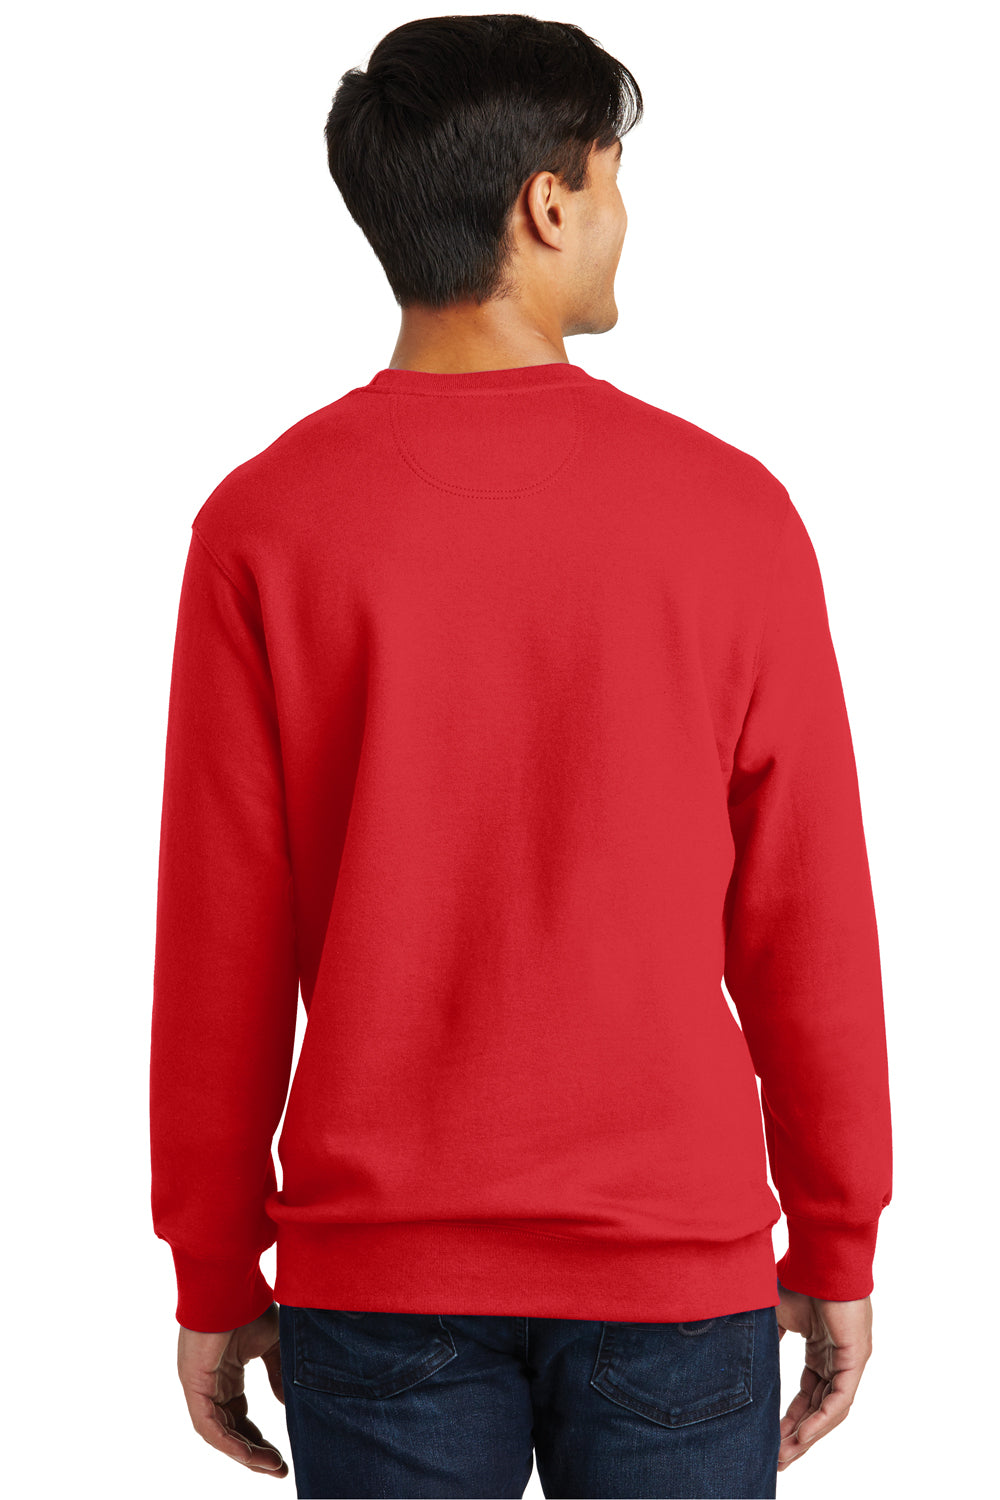 Port & Company PC850 Mens Fan Favorite Fleece Crewneck Sweatshirt Red Back